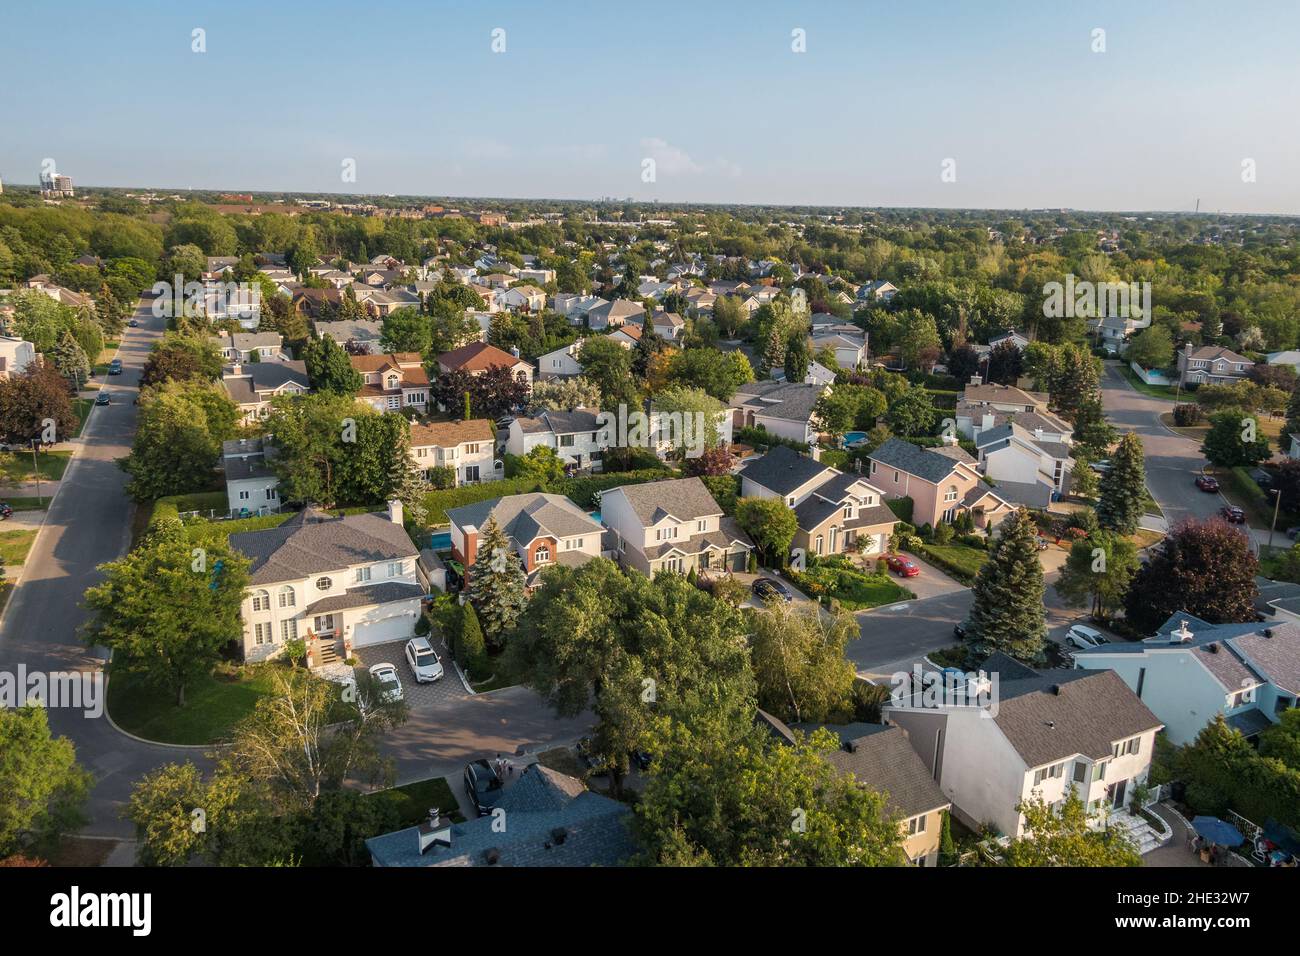 Luftaufnahme von Häusern und Straßen in einem schönen Wohnviertel in Montreal, Quebec, Kanada. Immobilien-, Immobilien- und Immobilienkonzept. Stockfoto